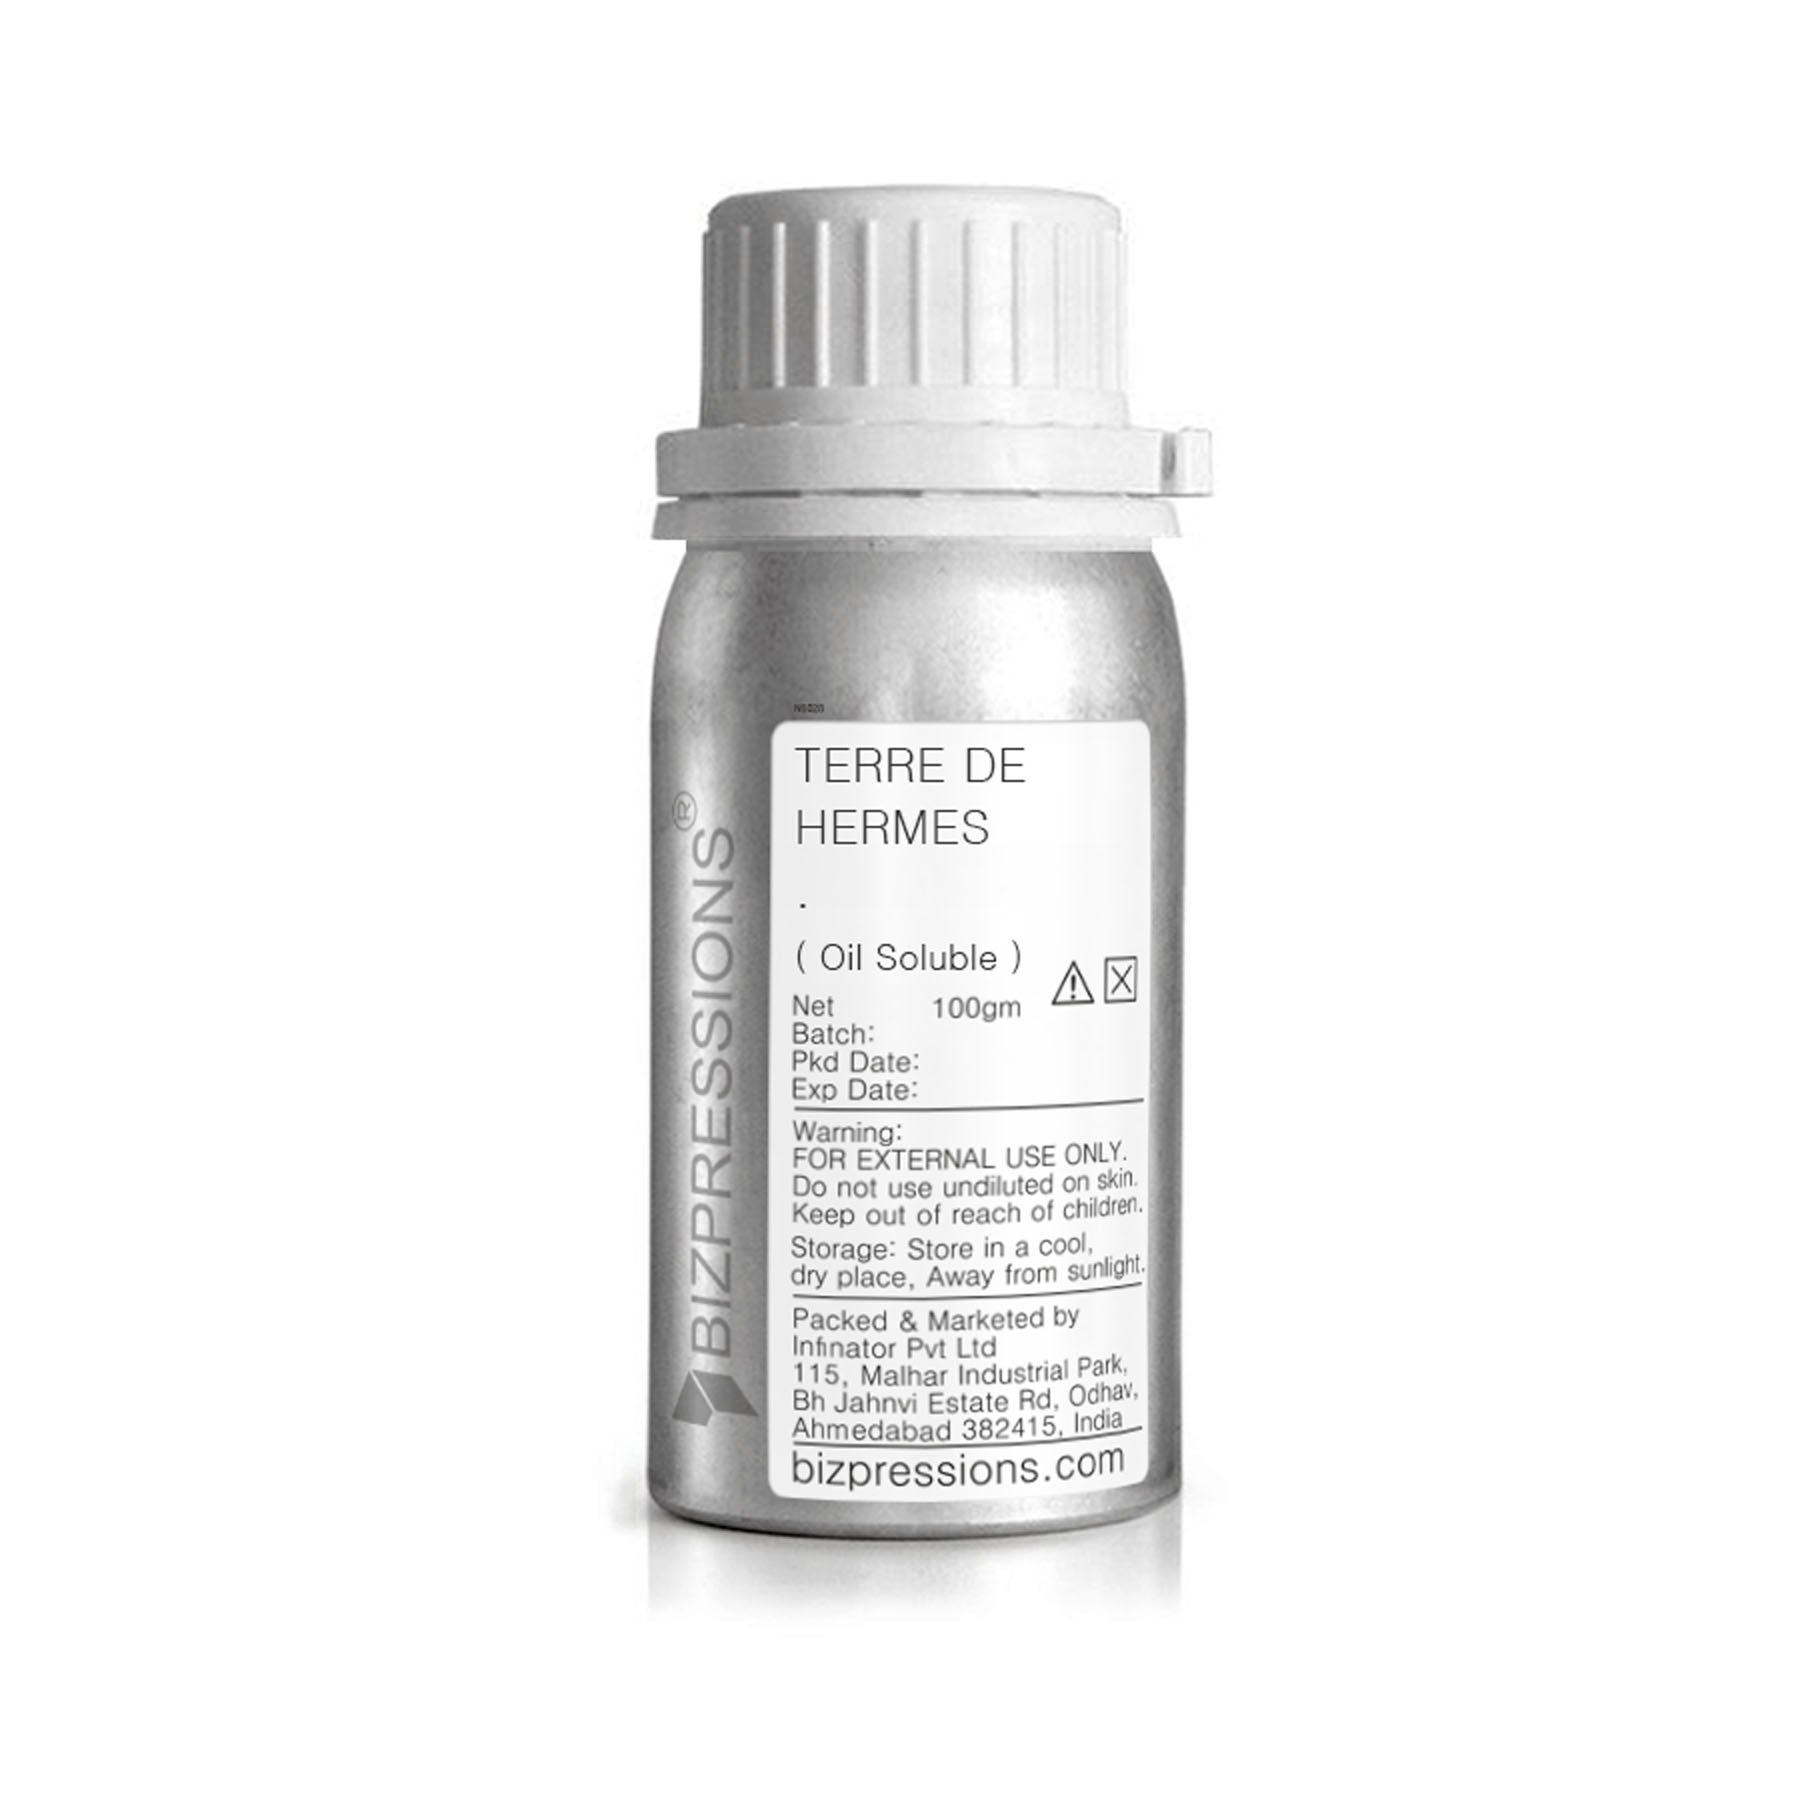 TERRE DE HERMES - Fragrance ( Oil Soluble ) - 100 gm